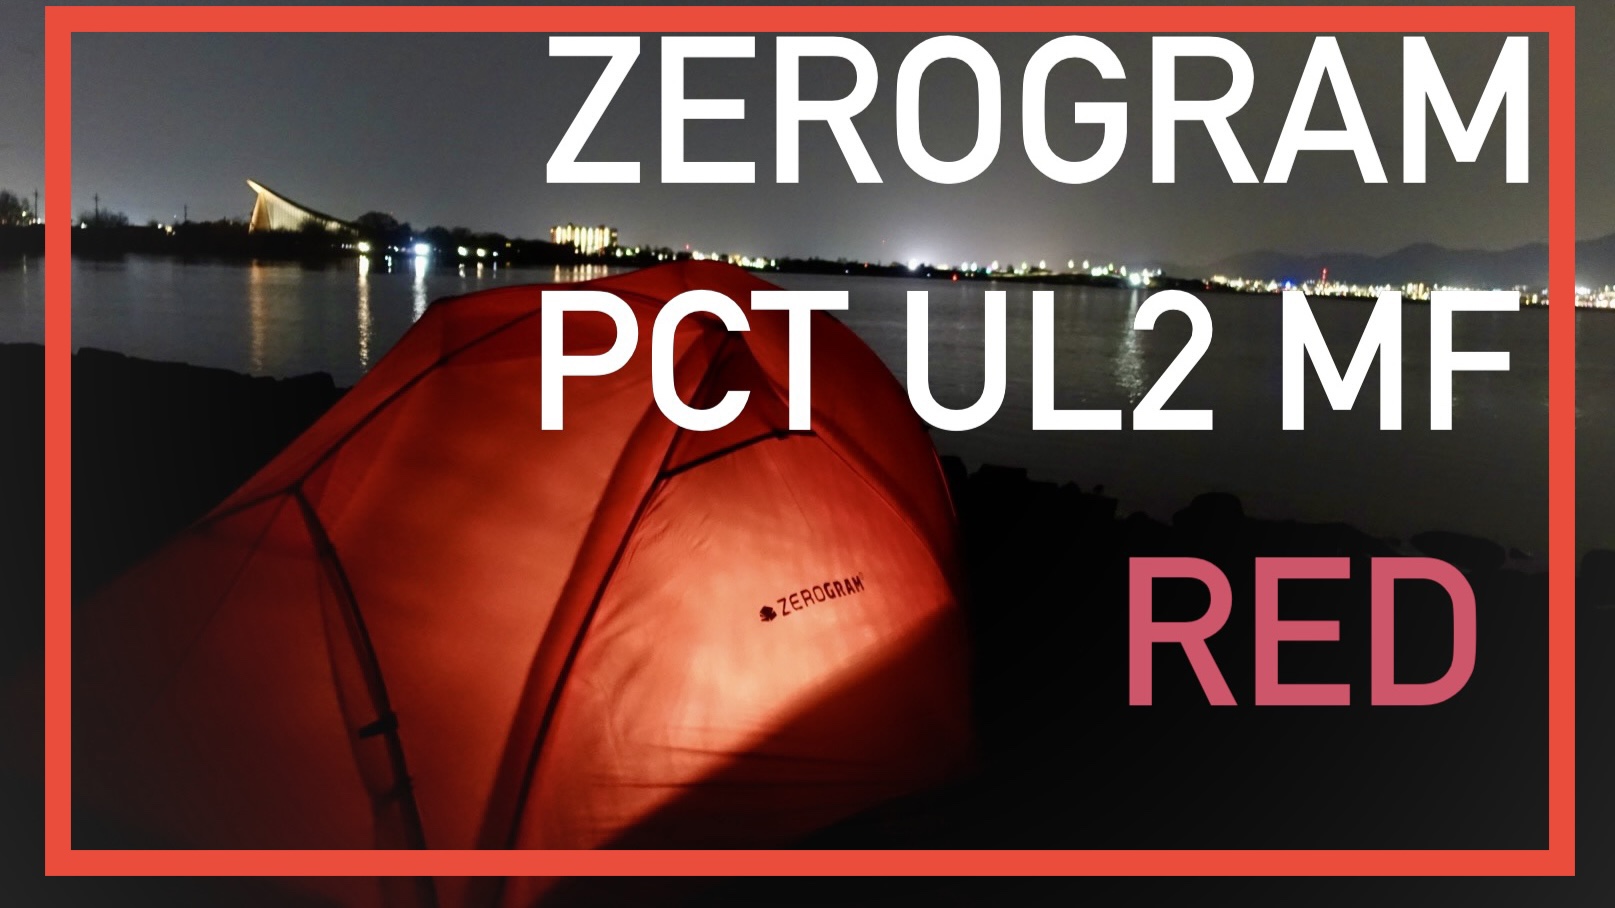 ギアレビュー]ZEROGRAM PCT UL2 MF！超軽量•結露なし・広々空間！ソロ用ダブルウォールの完成形 - 軽旅 カルタビ